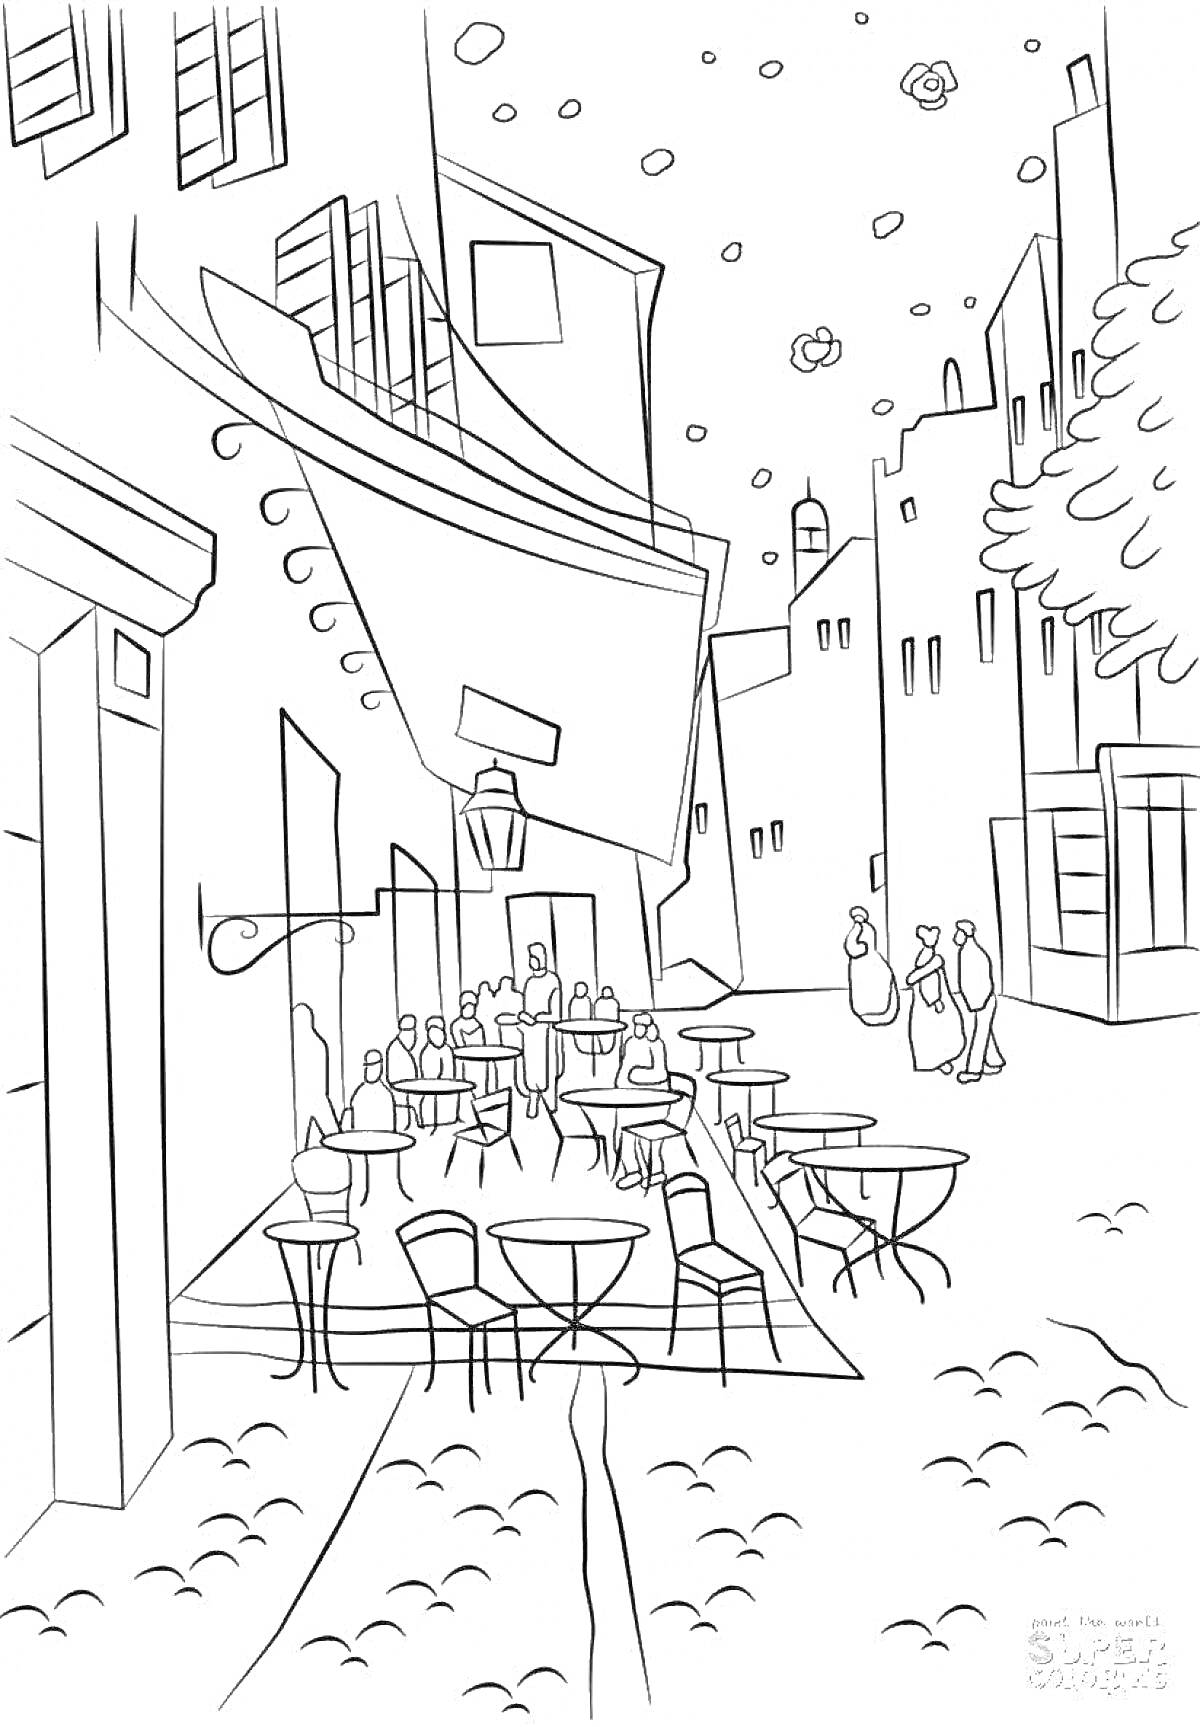 Раскраска Уличное кафе в европейском стиле с людьми за столиками, зданиями с окнами и балконами, уличными фонарями и деревьями